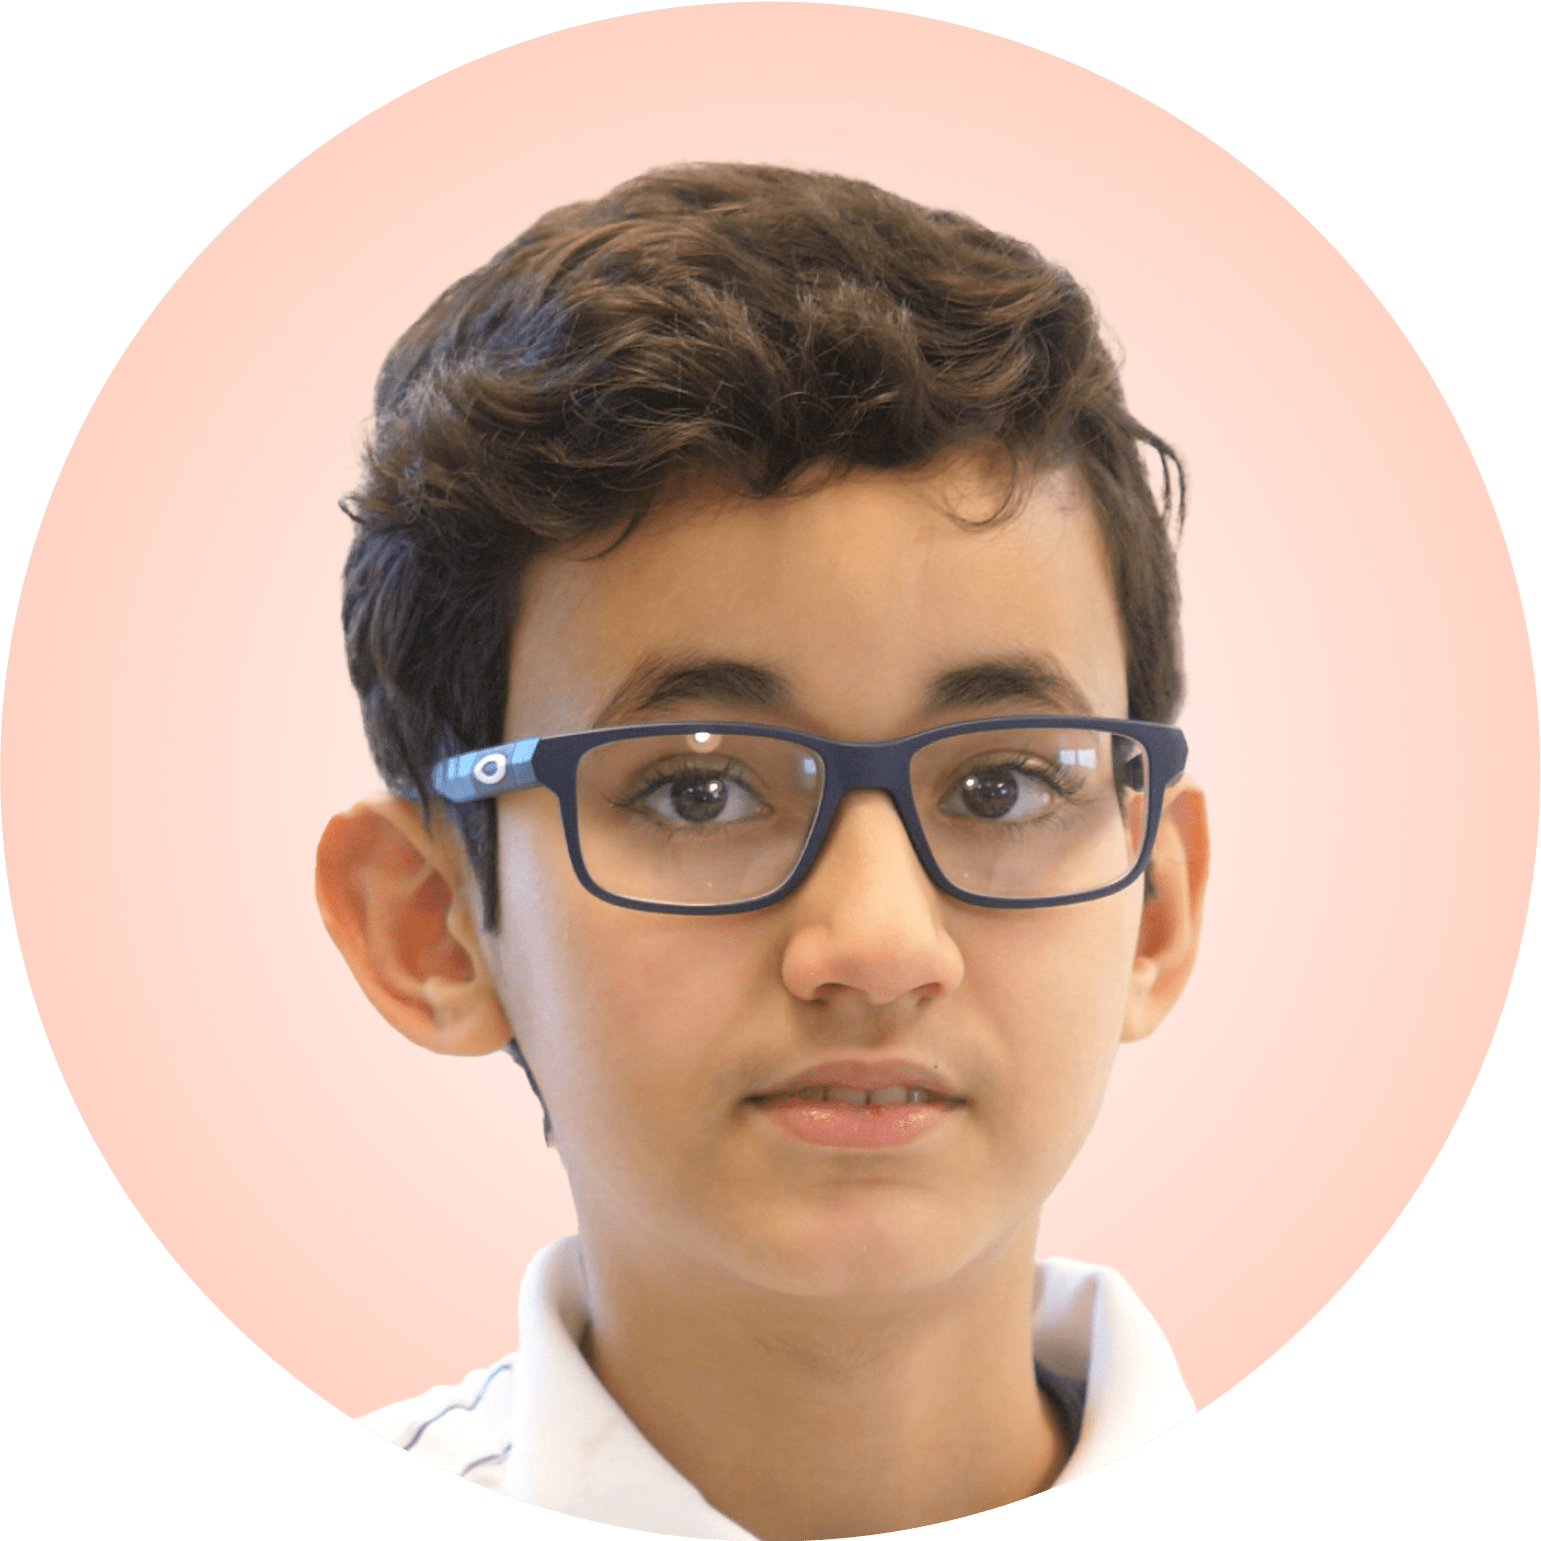 MZ23-G2-Boy-Imran Fahmi - Age 11